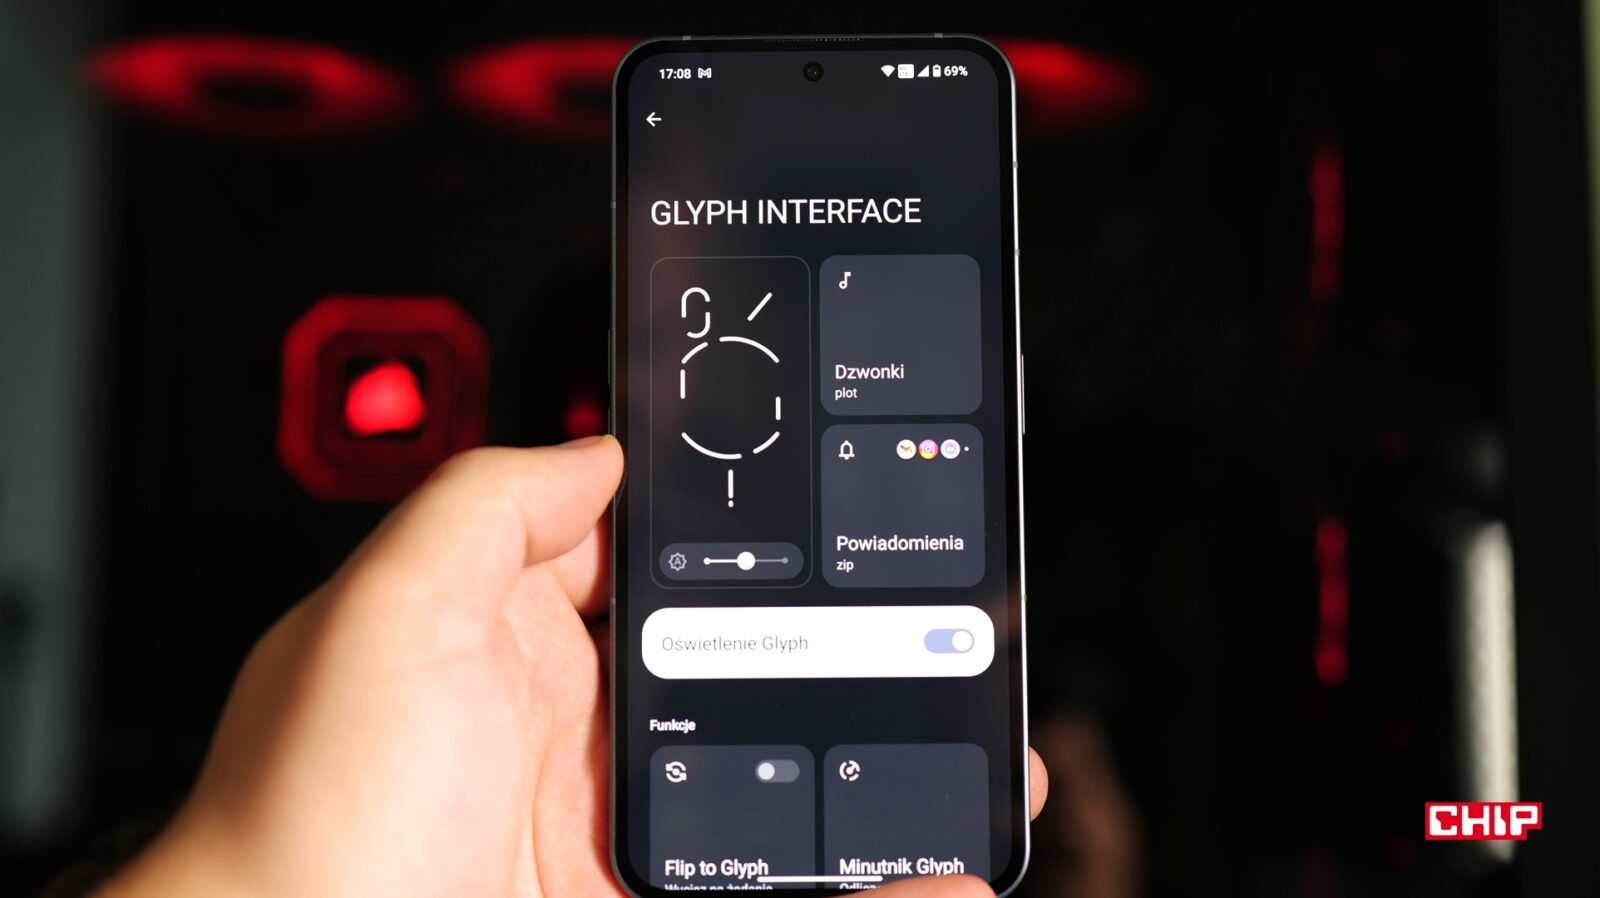 Ogólne ustawienia Glyph Interface